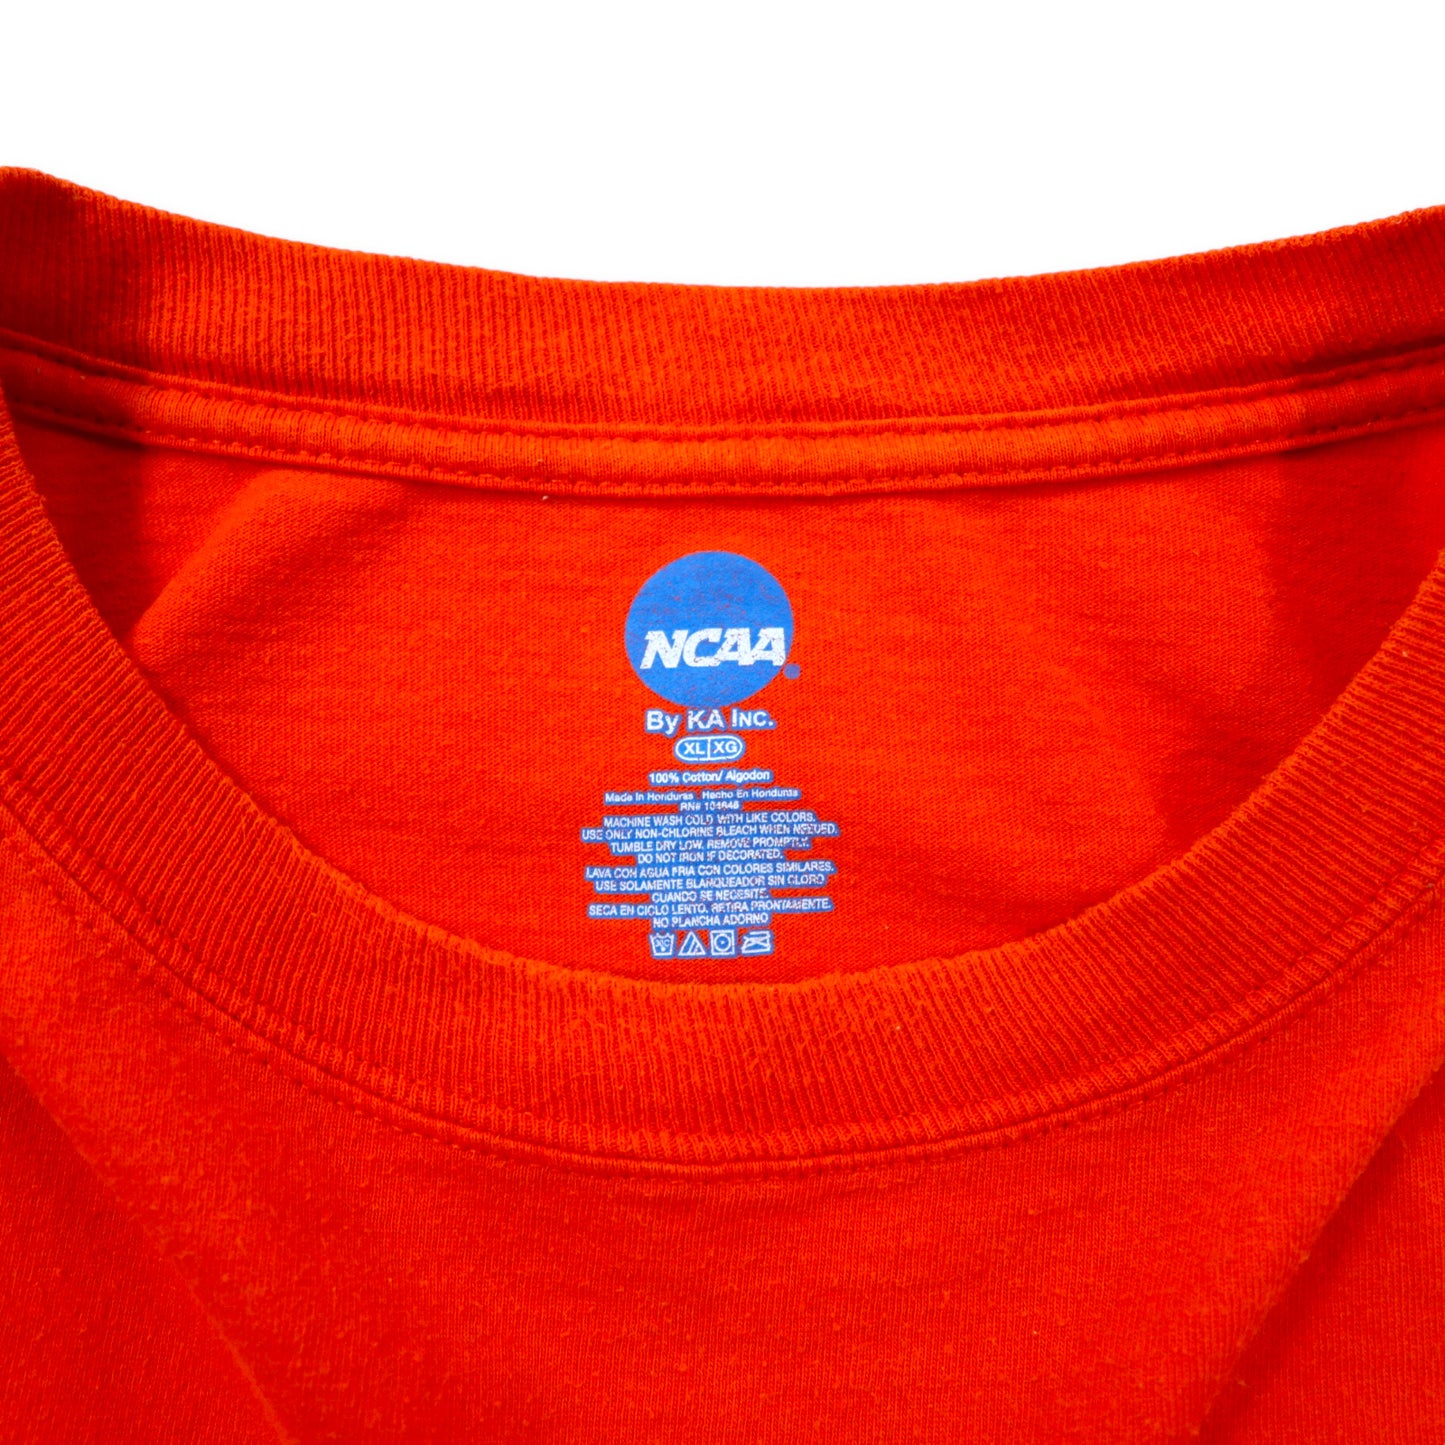 NCAA カレッジプリントTシャツ XL オレンジ コットン ILLIOIS ビッグサイズ